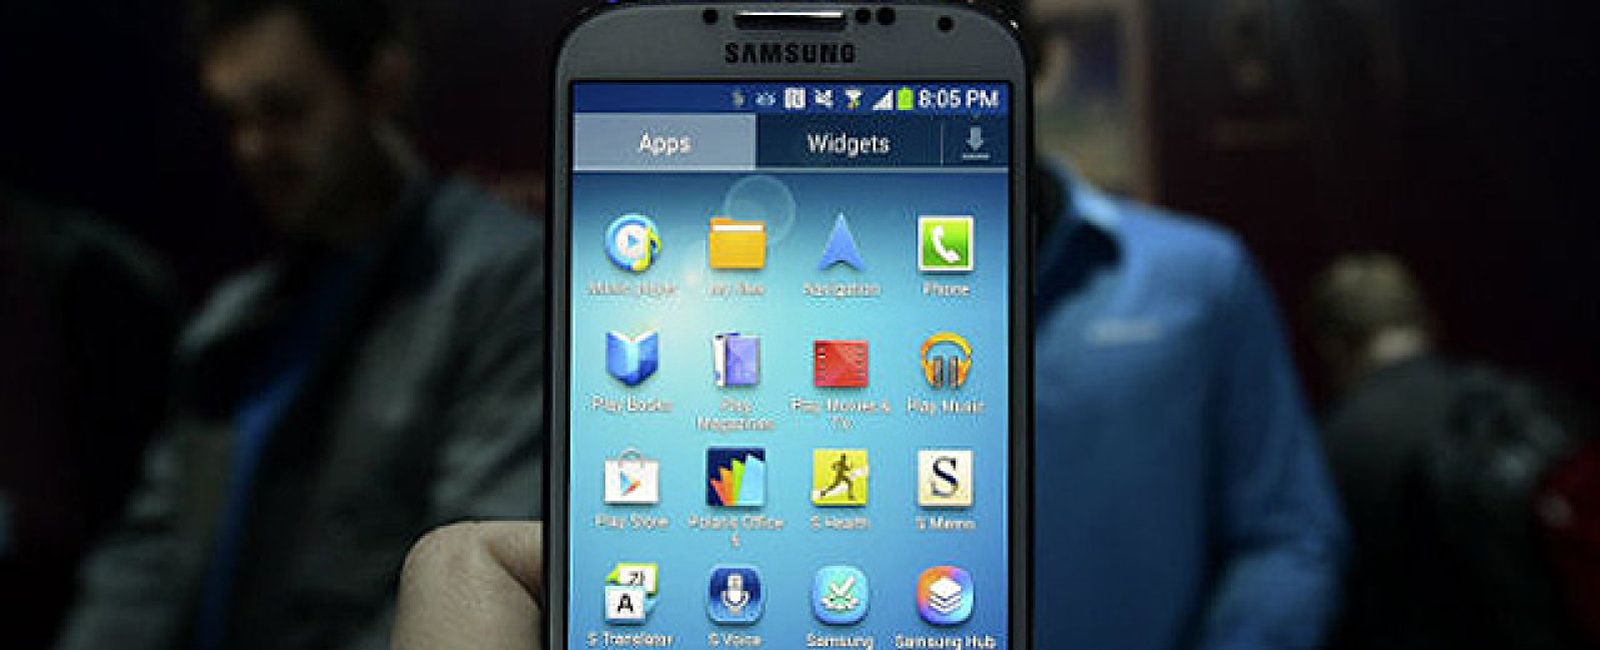 Foto: Banco de pruebas: Galaxy S4 no tiene rival en cuanto a potencia